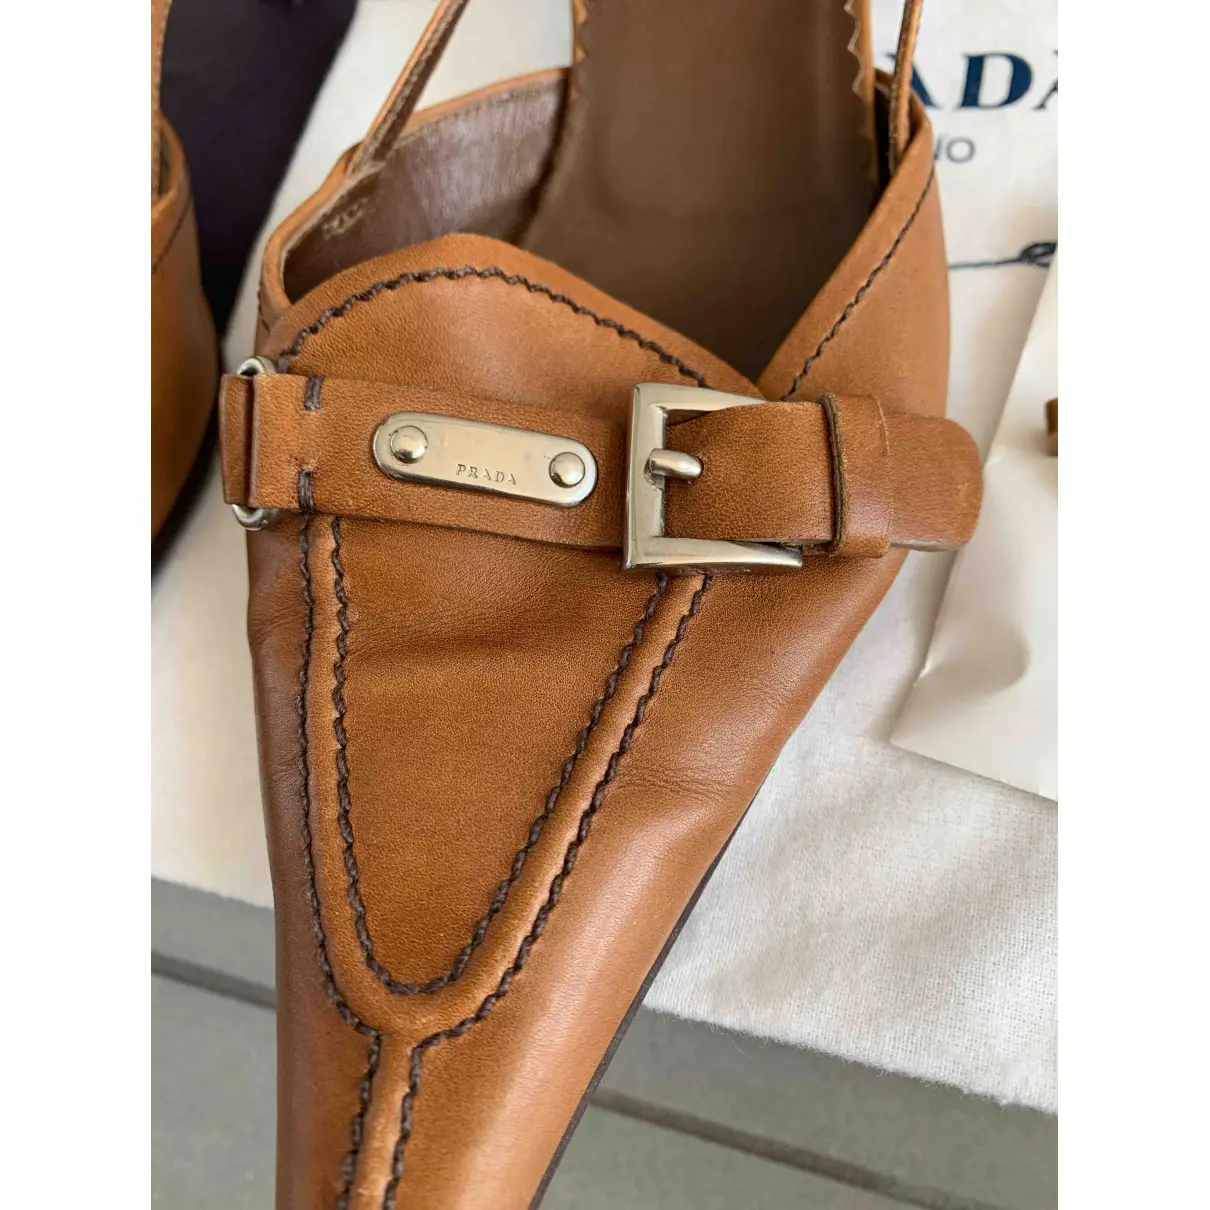 Leather sandals Prada